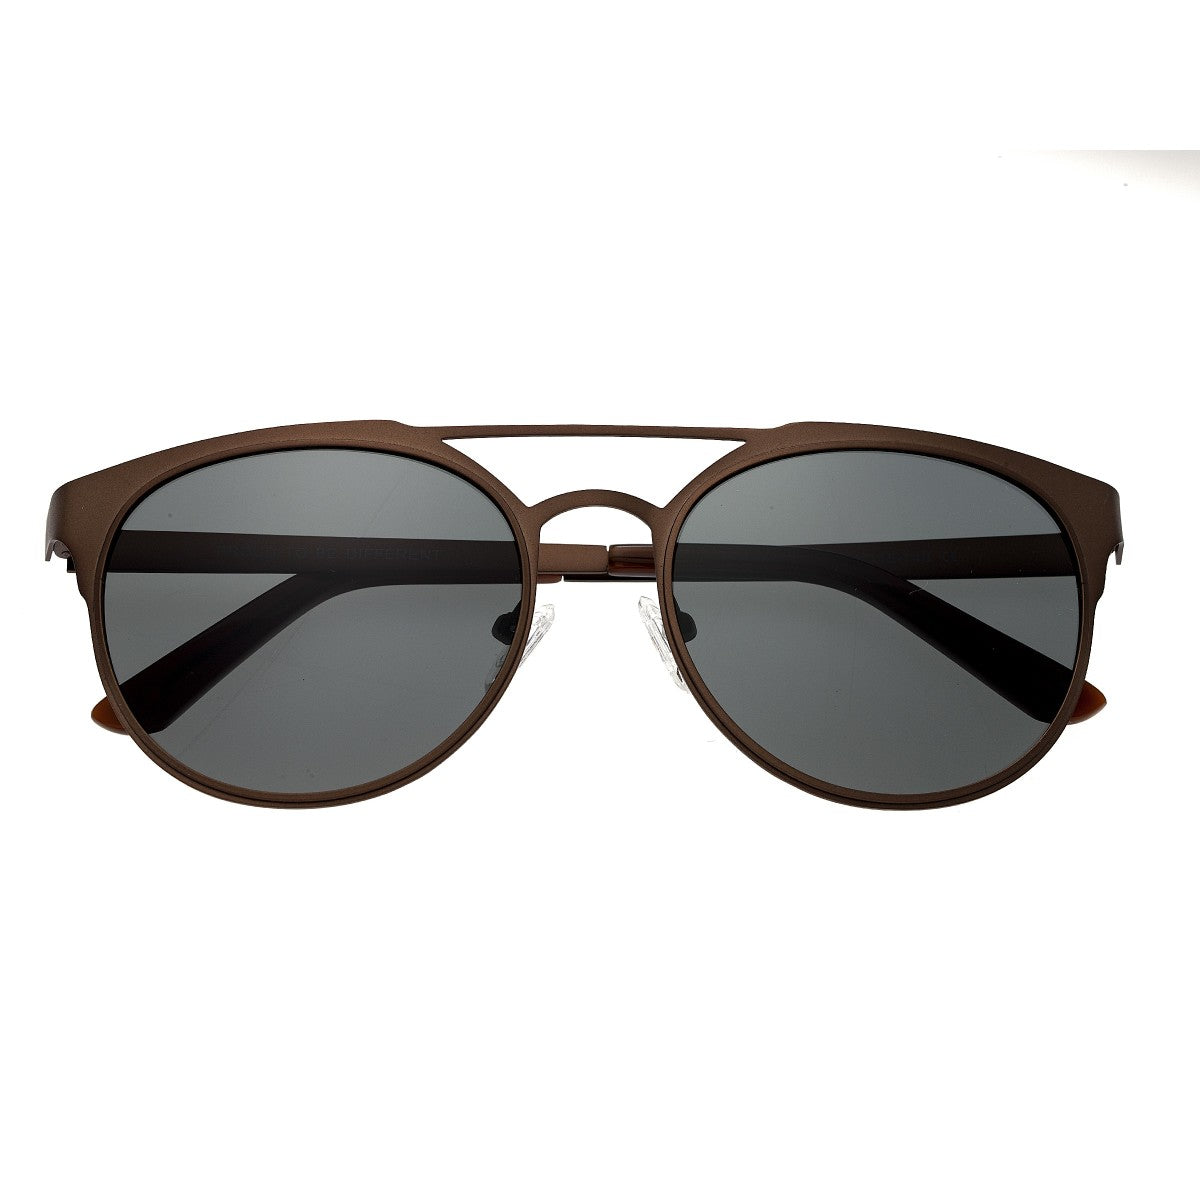 Breed Mensa Titanium Polarized Sunglasses - Brown/Black - BSG037BN